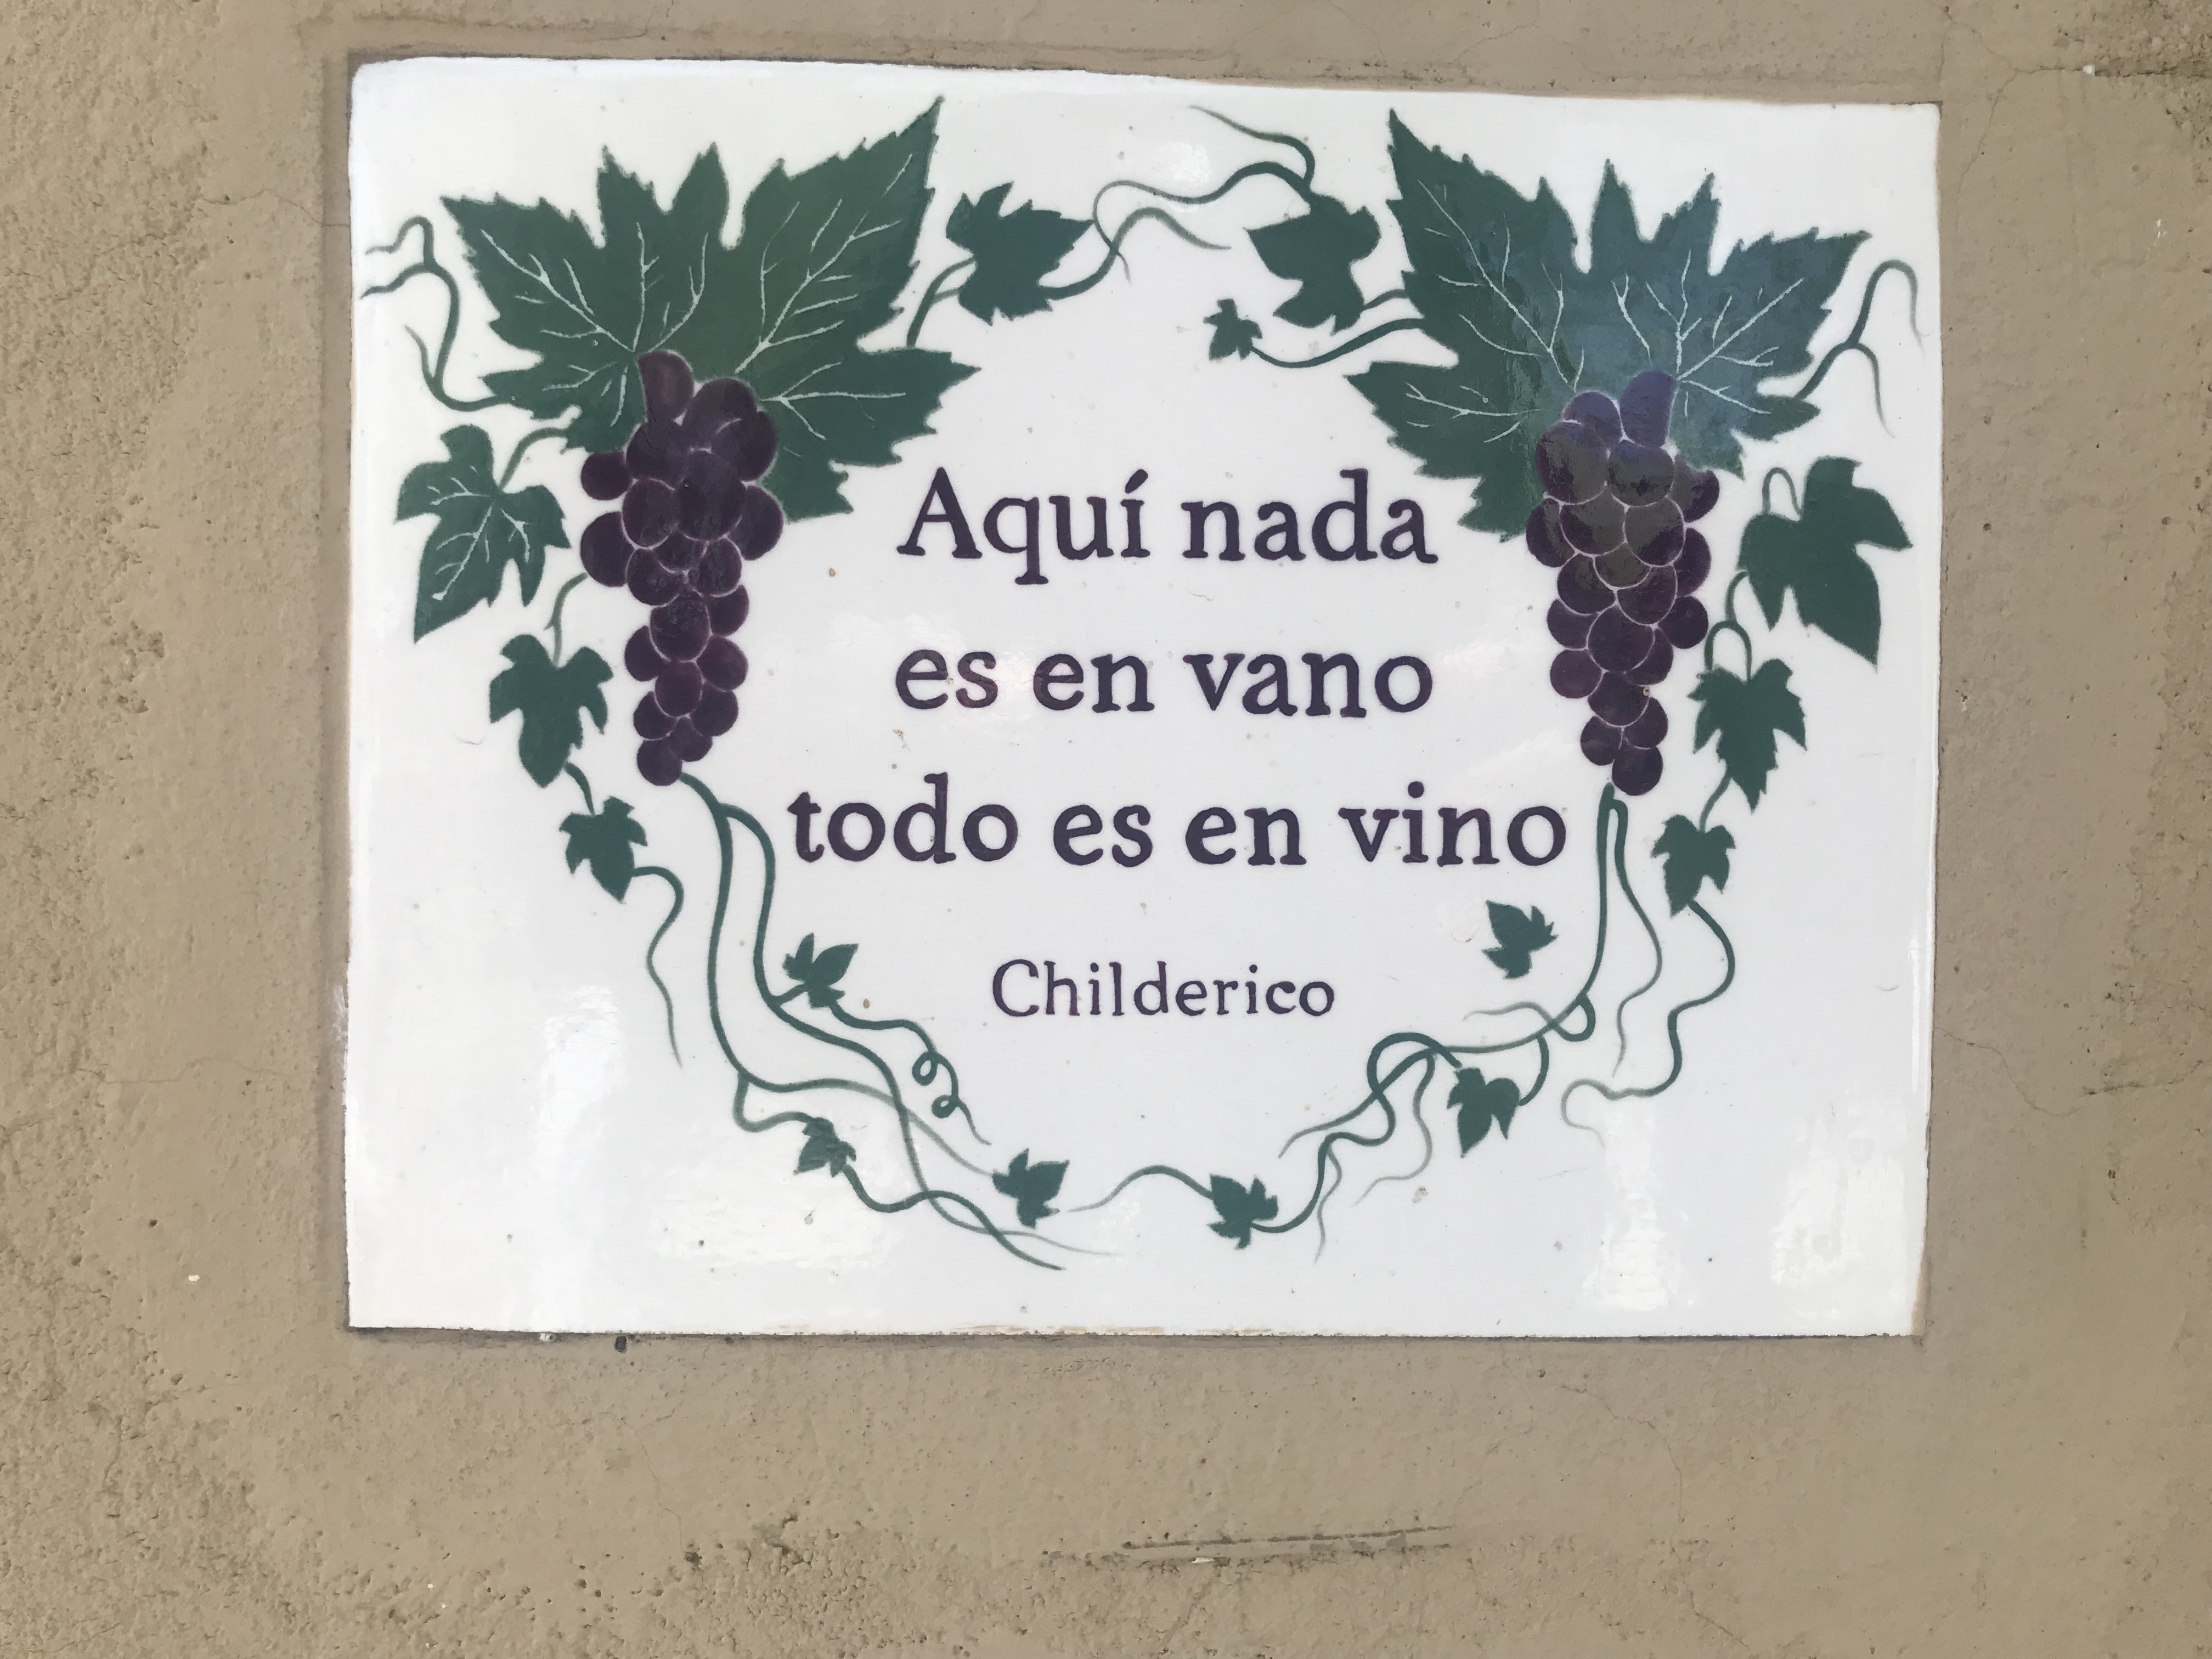 Poetry in the vineyards